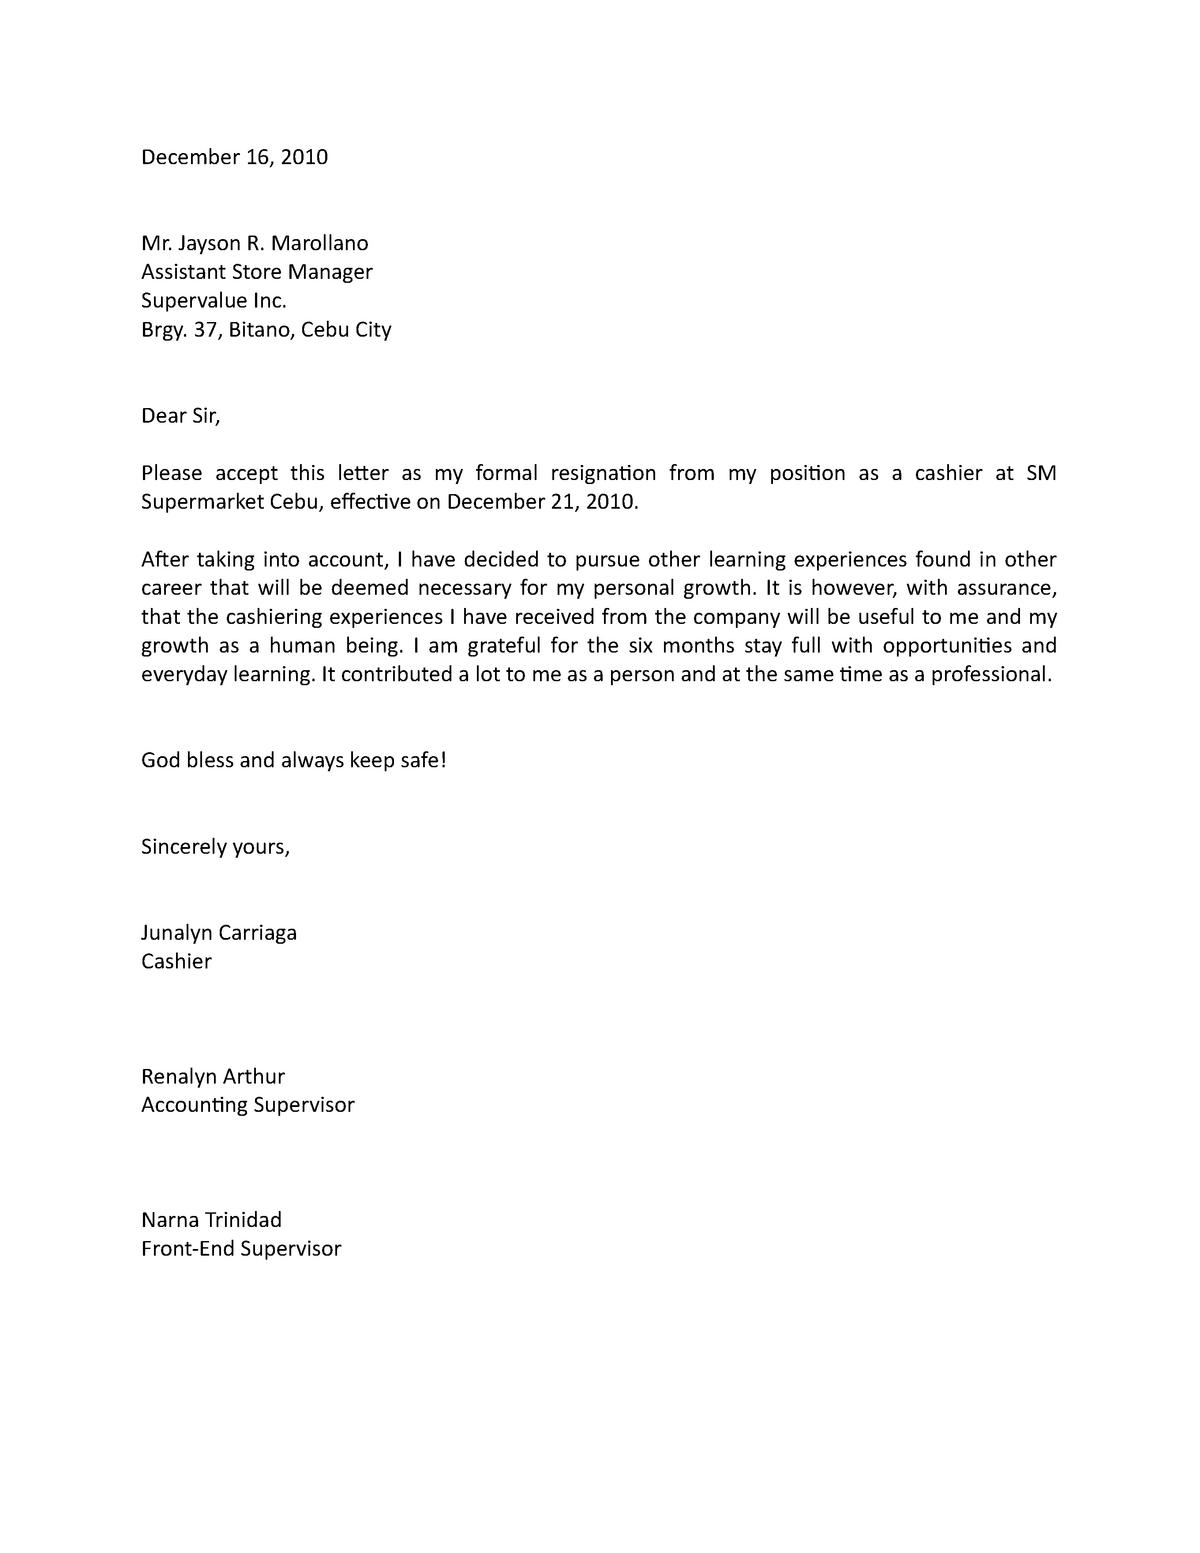 Resignation Letter - December 16, 2010 Mr. Jayson R. Marollano ...